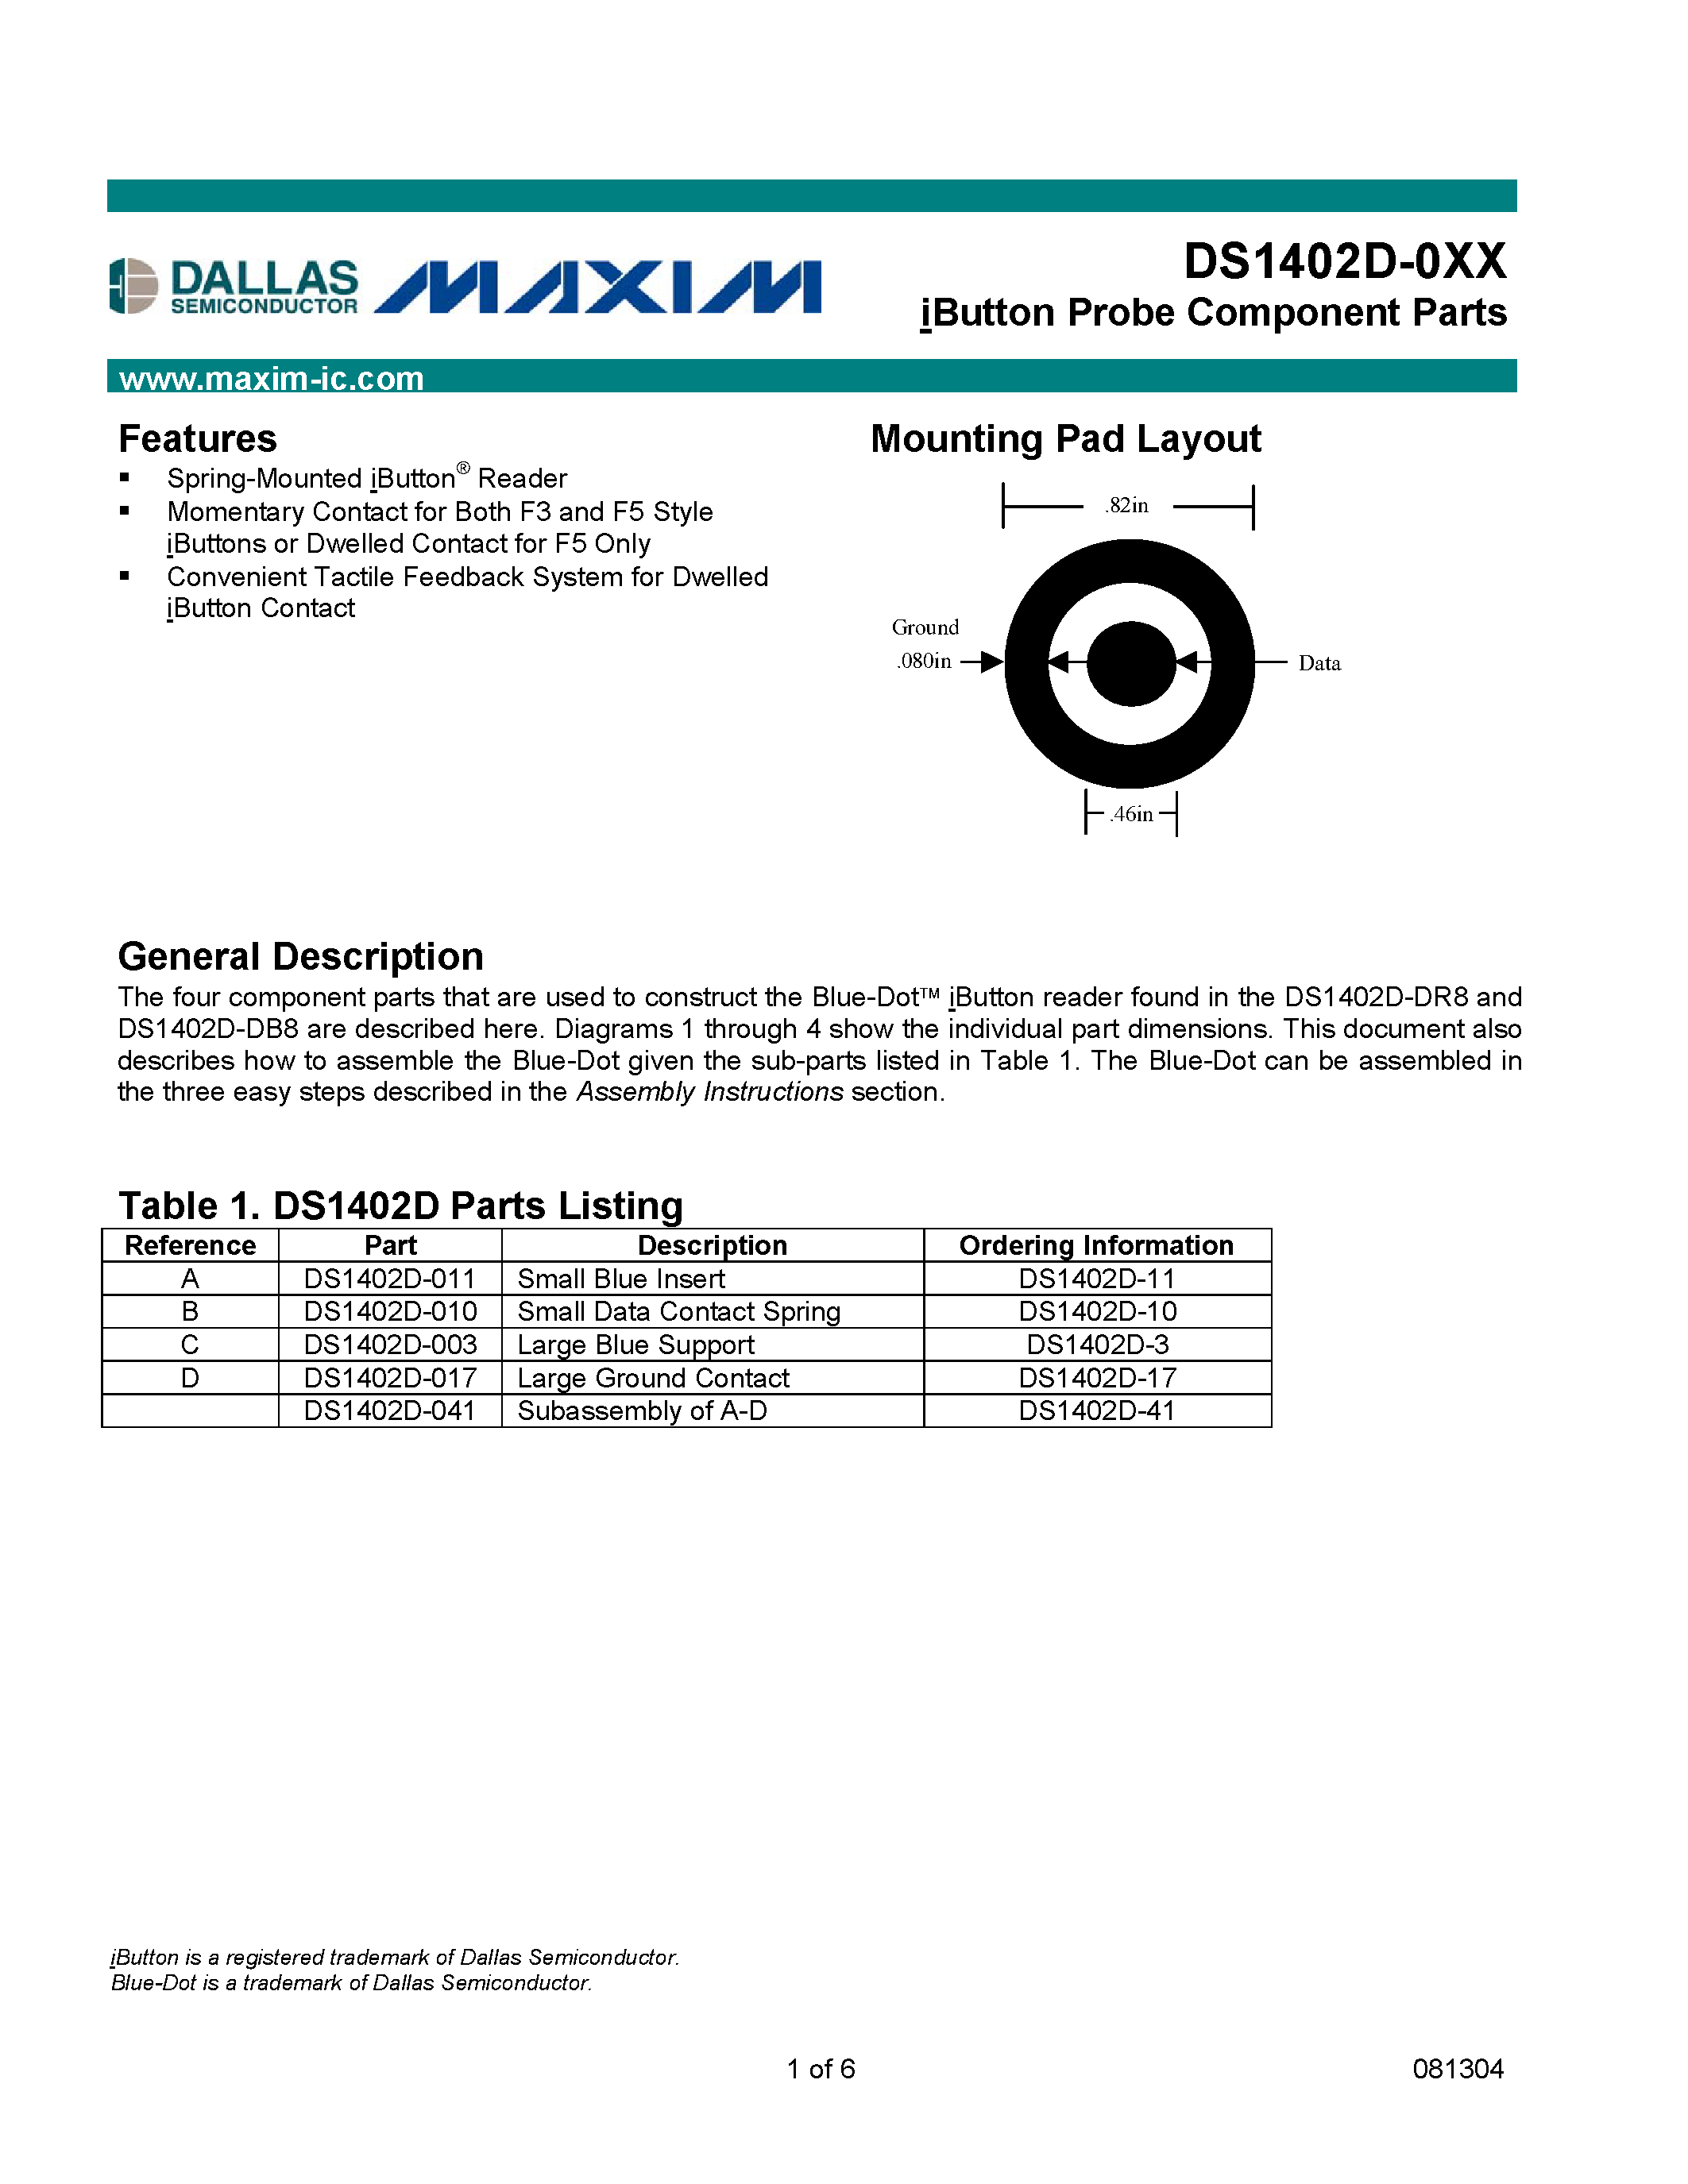 Даташит DS1402D-010 - iButton Probe Component Parts страница 1